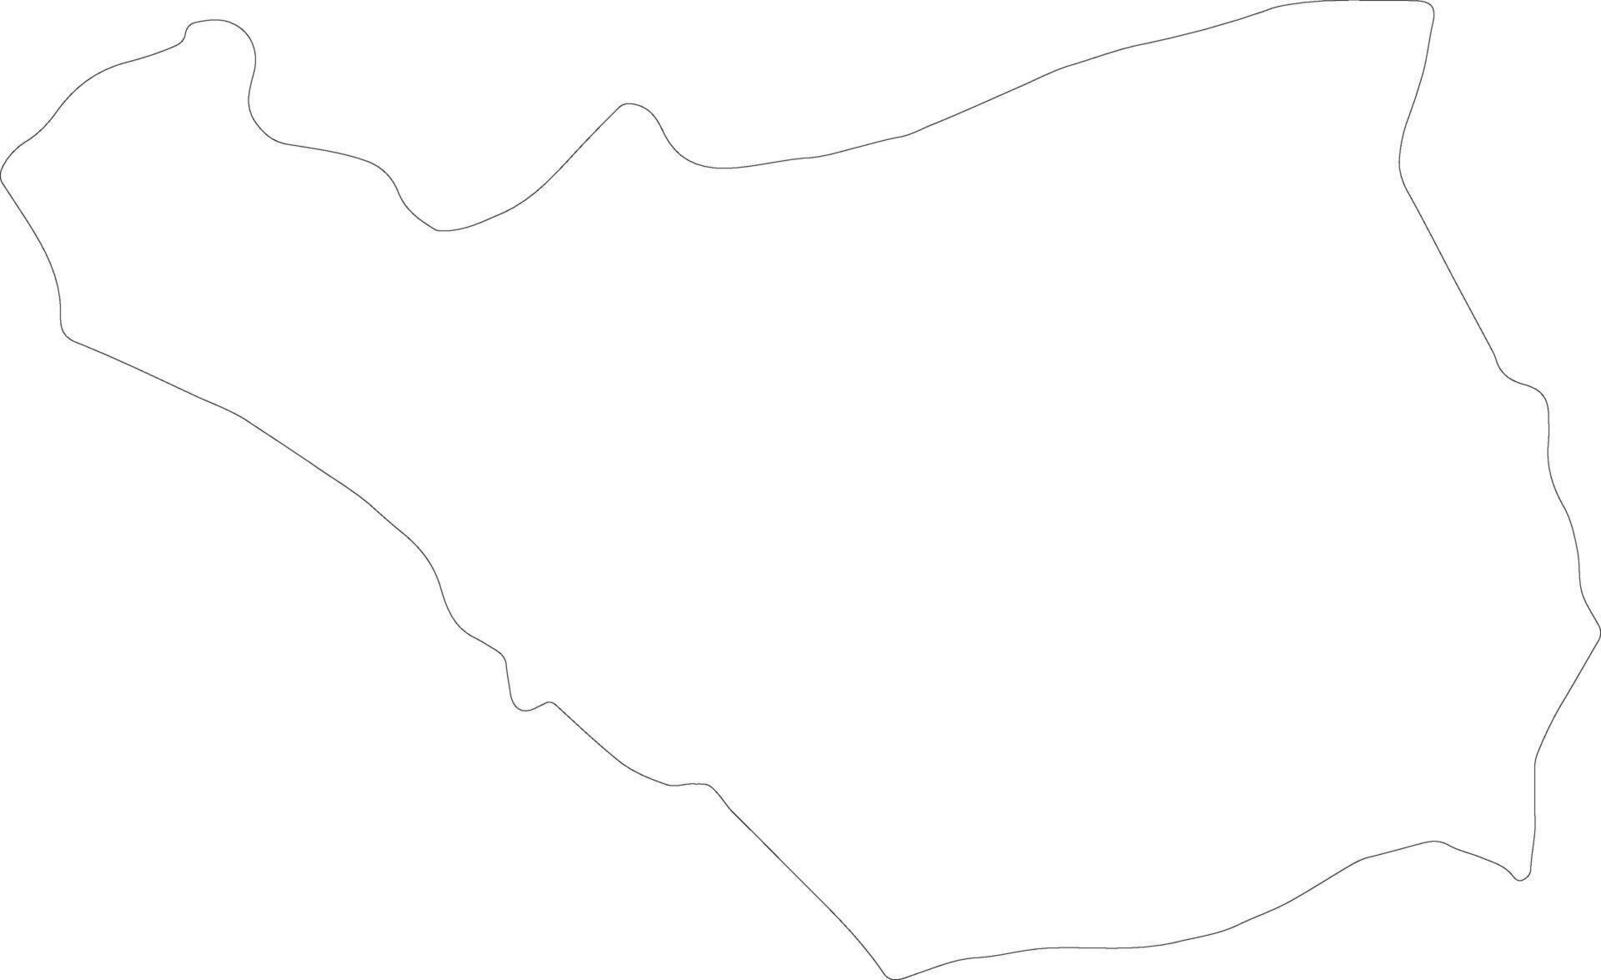 ararat armenia översikt Karta vektor